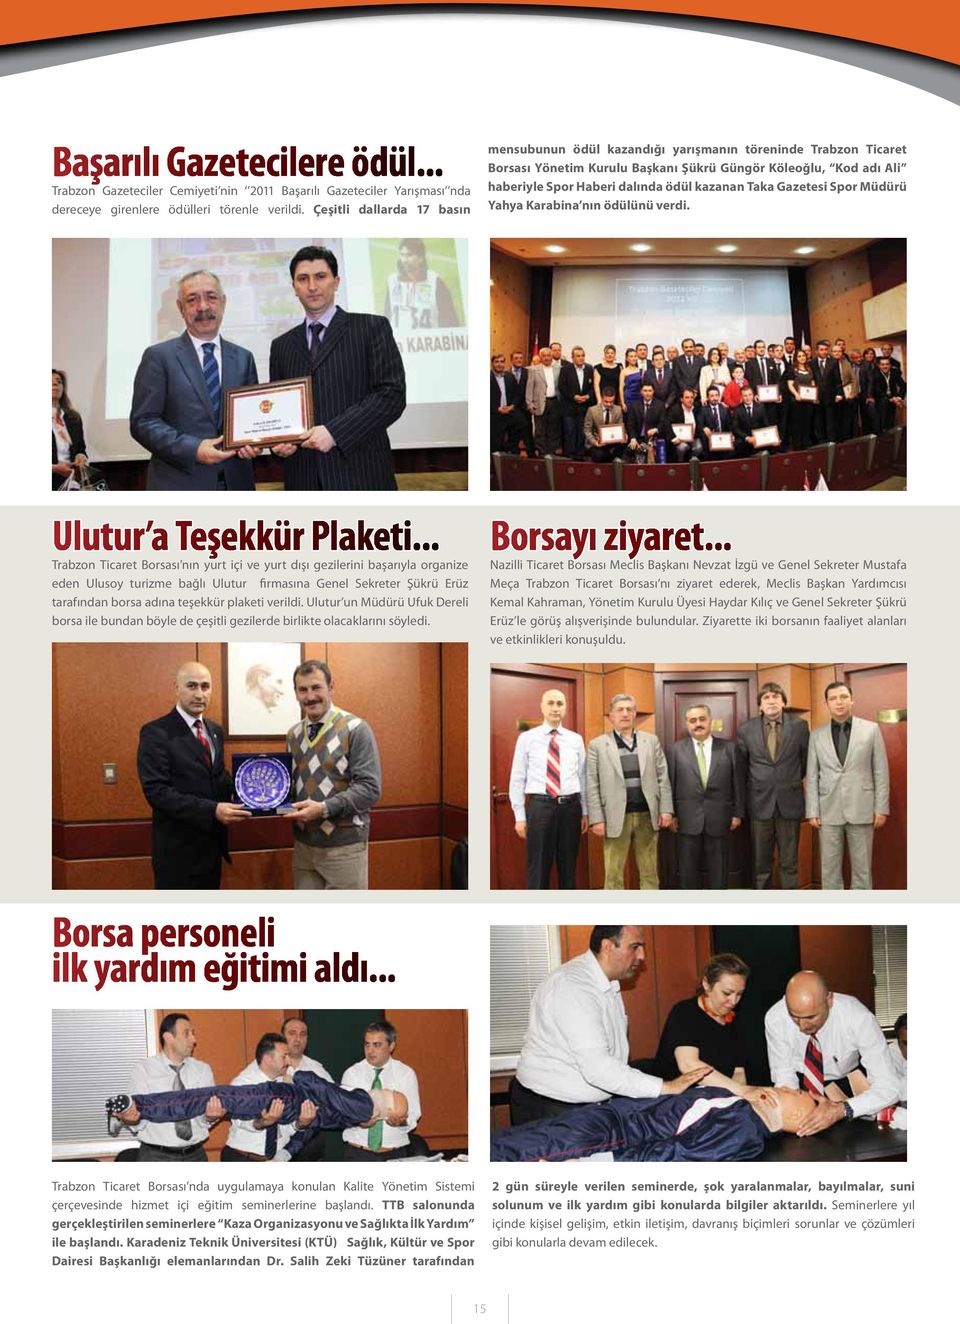 Taka Gazetesi Spor Müdürü Yahya Karabina nın ödülünü verdi. Ulutur a Teşekkür Plaketi.